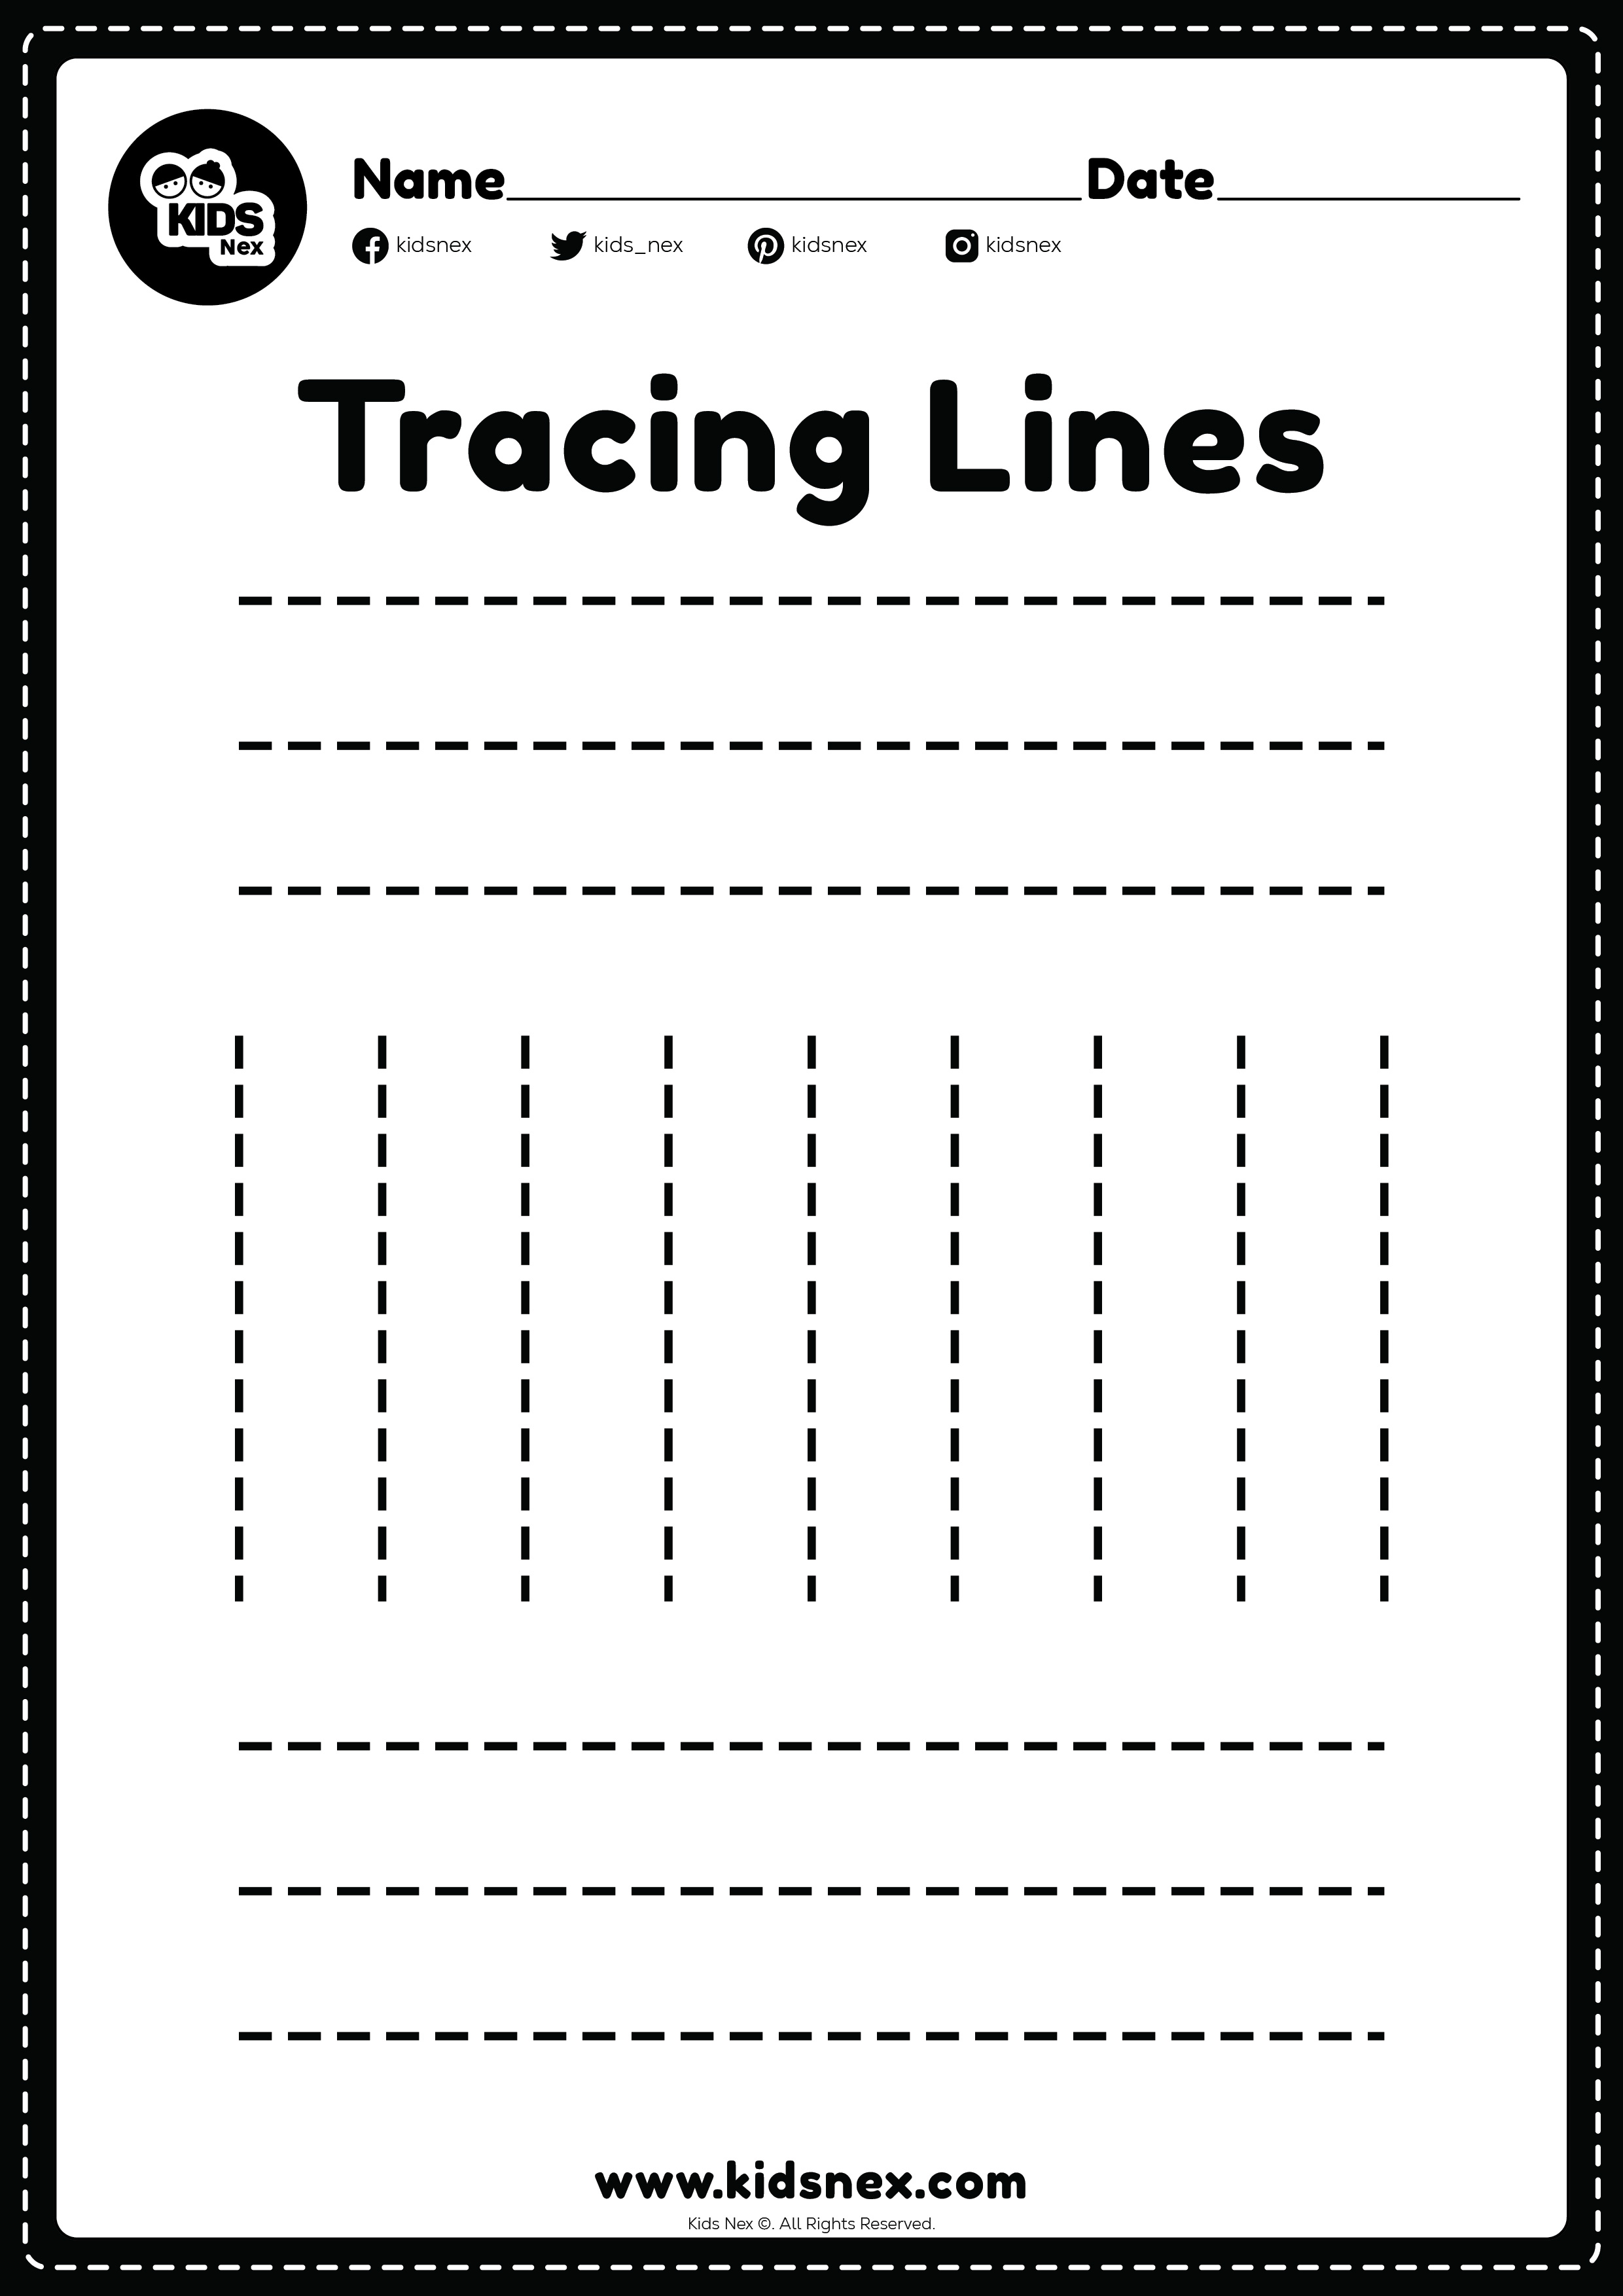 Standing and Sleeping line tracing worksheet for kindergarten and preschoolers kids